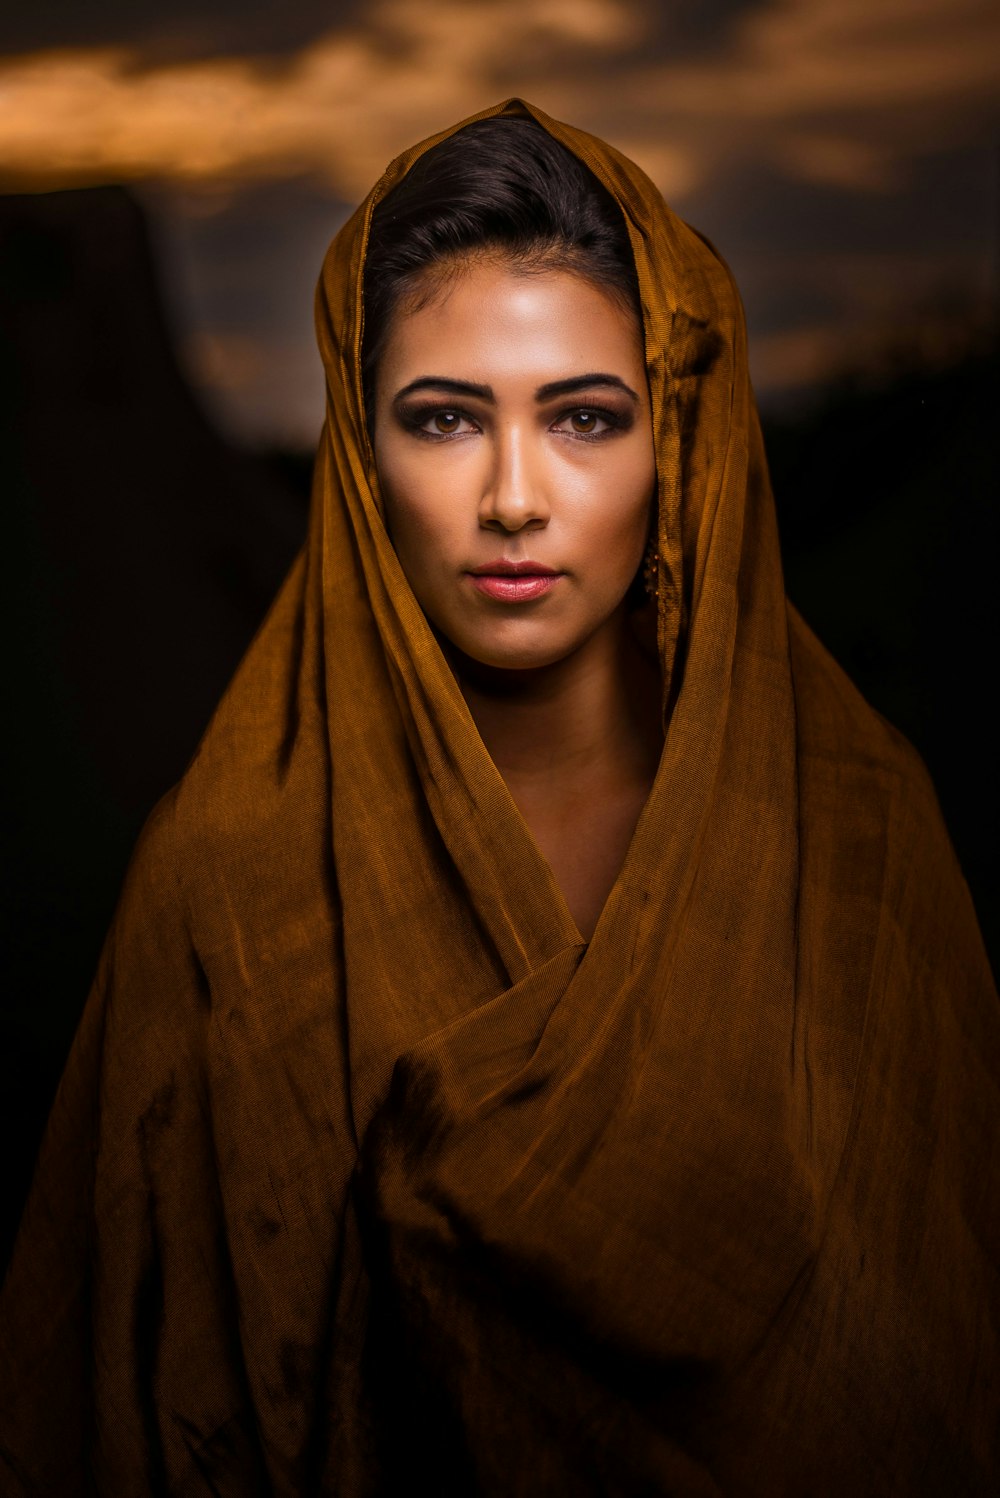 fotografía de retrato de mujer con pañuelo marrón en la cabeza